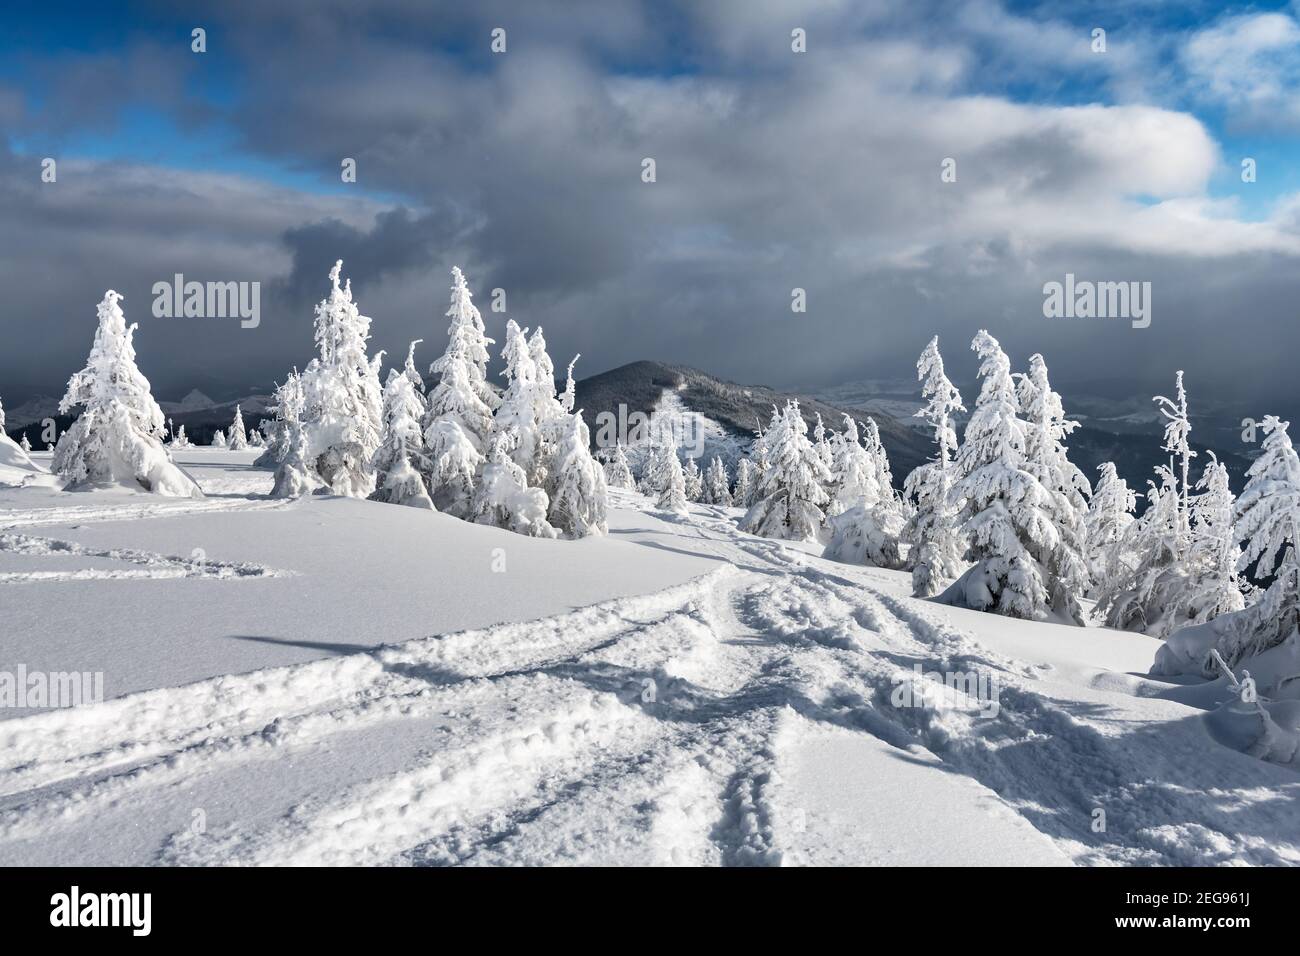 Paysage fantastique avec des arbres enneigés et des pistes de ski de freeriders montagnes d'hiver Banque D'Images